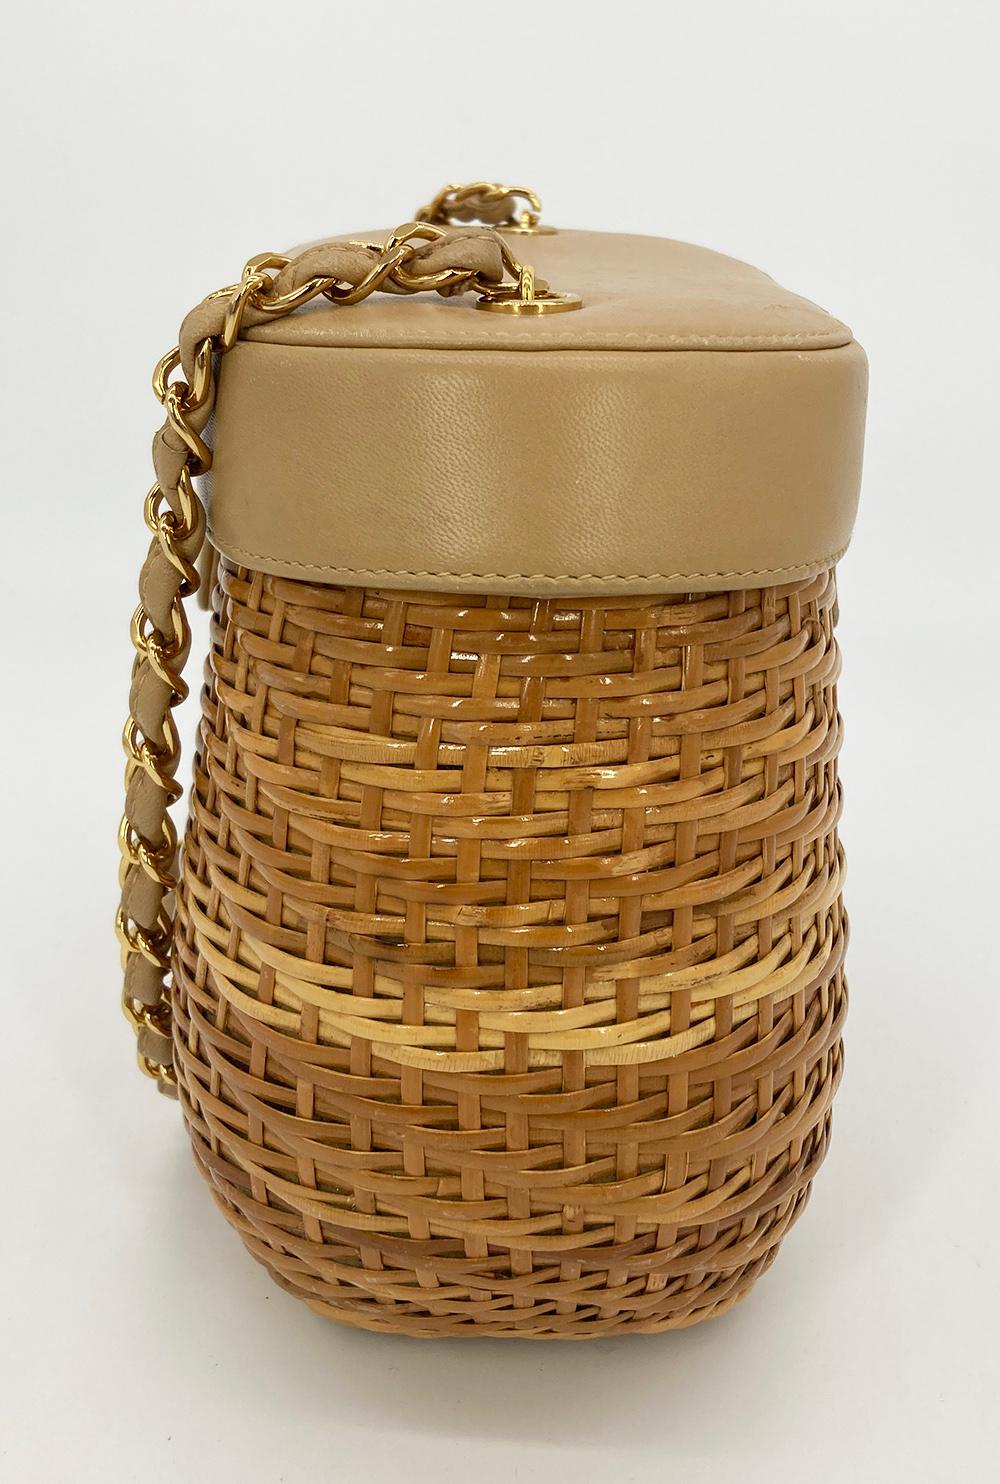 RARE VINTAGE Chanel Wicker Basket Bag For Sale 1